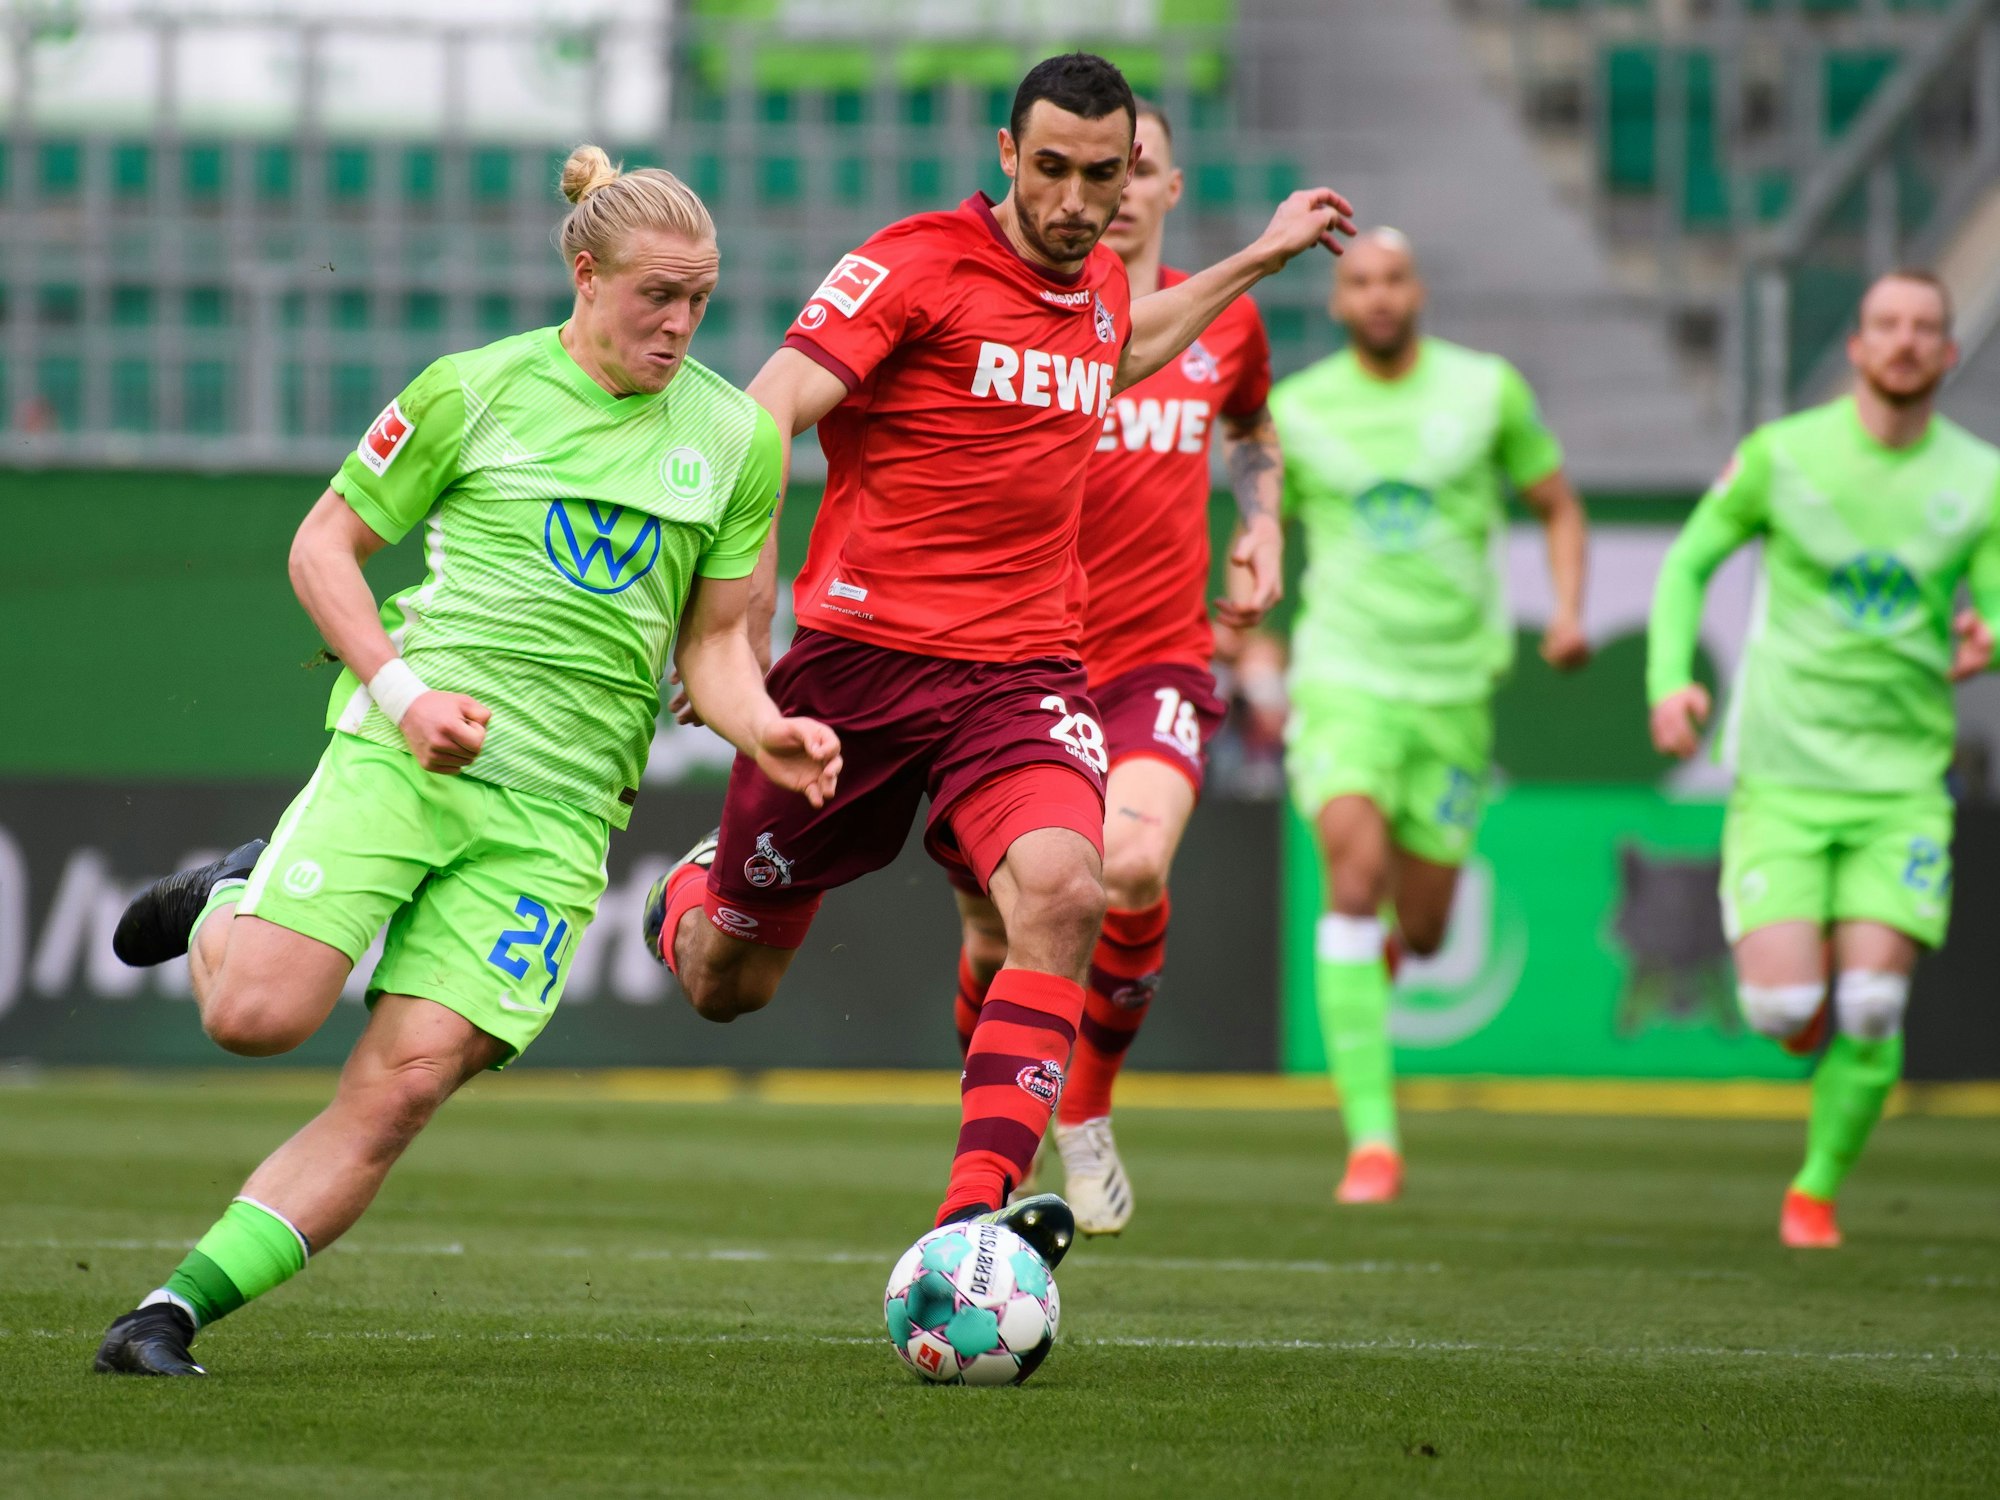 Wolfsburgs Xaver Schlager (l) spielt gegen Kölns Ellyes Skhiri.